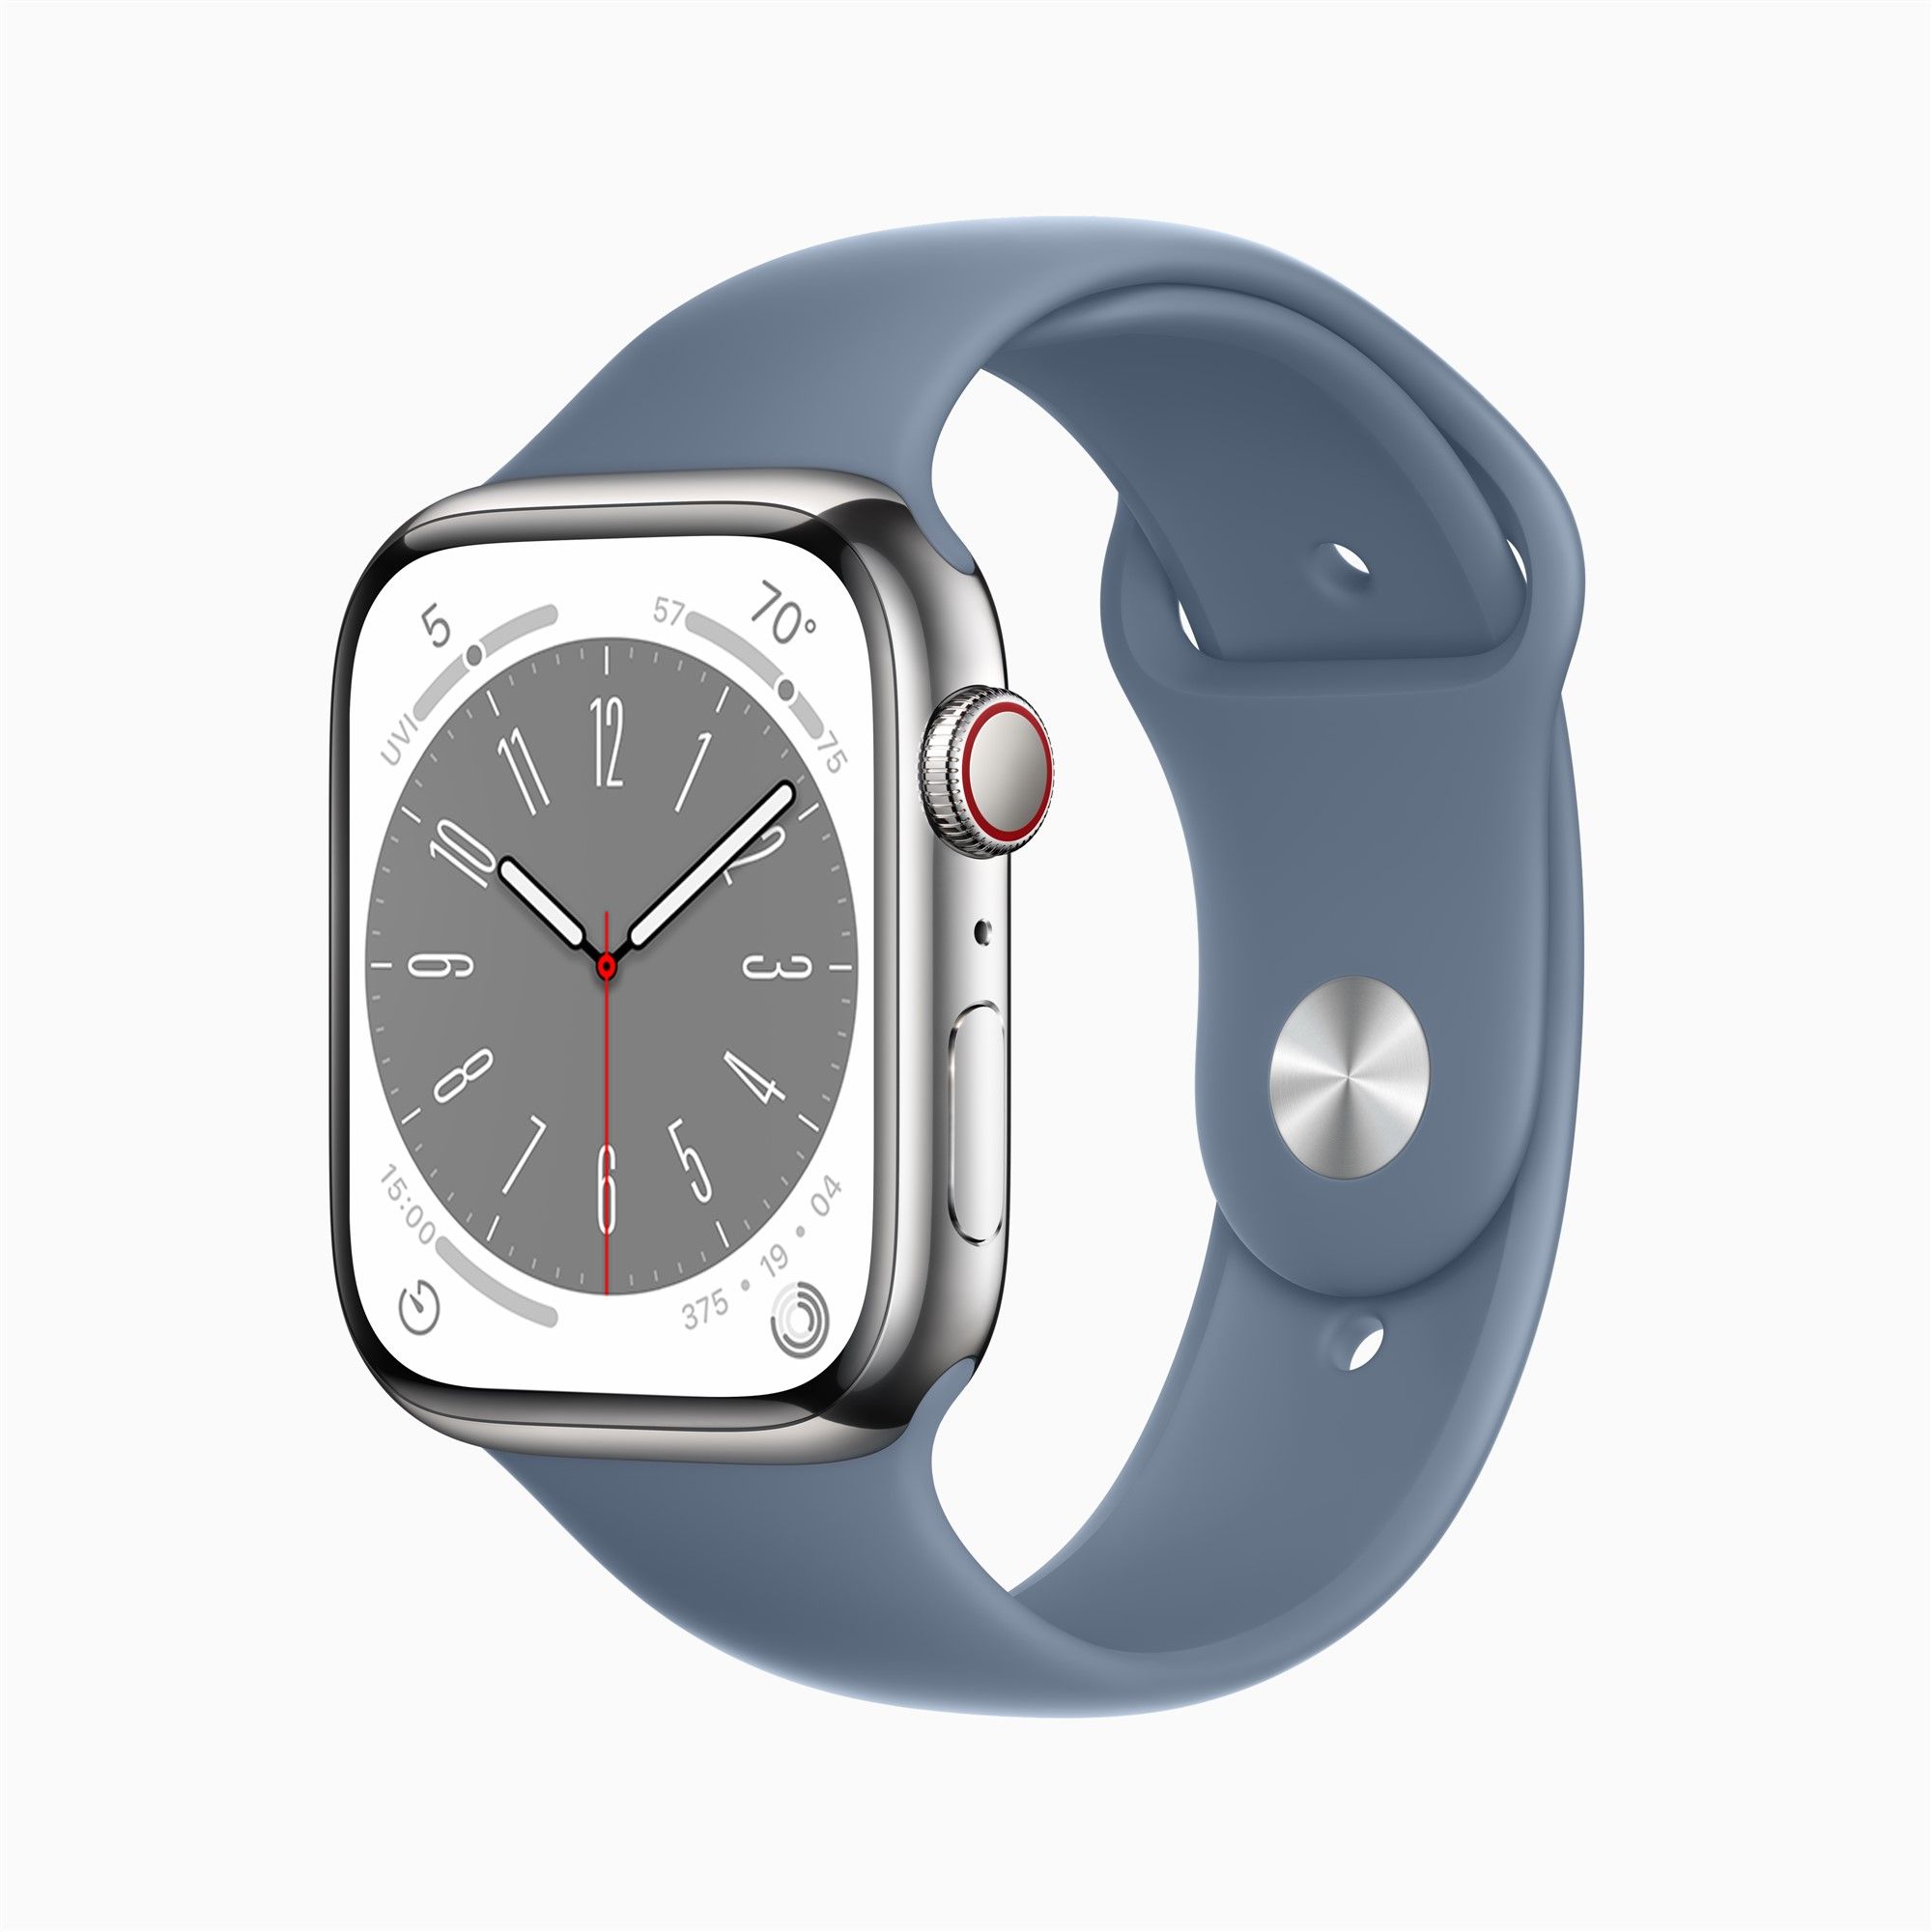 erscheint Airpods in in Apple Watch 2. Pro Ultra-Version, Generation